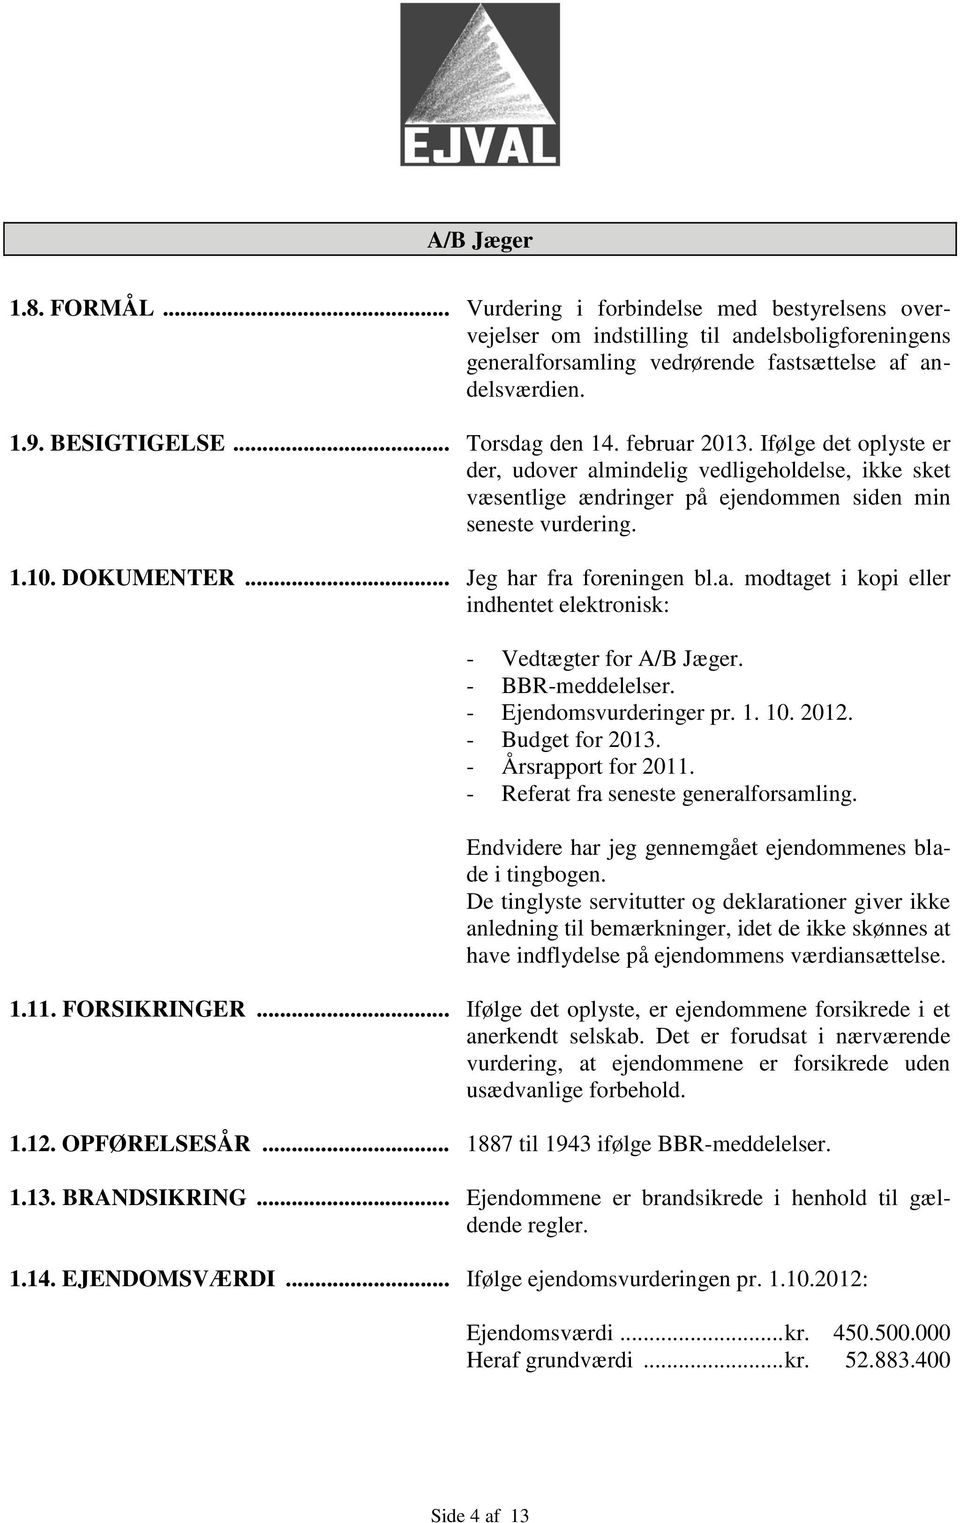 .. Jeg har fra foreningen bl.a. modtaget i kopi eller indhentet elektronisk: - Vedtægter for A/B Jæger. - BBR-meddelelser. - Ejendomsvurderinger pr. 1. 10. 2012. - Budget for 2013.